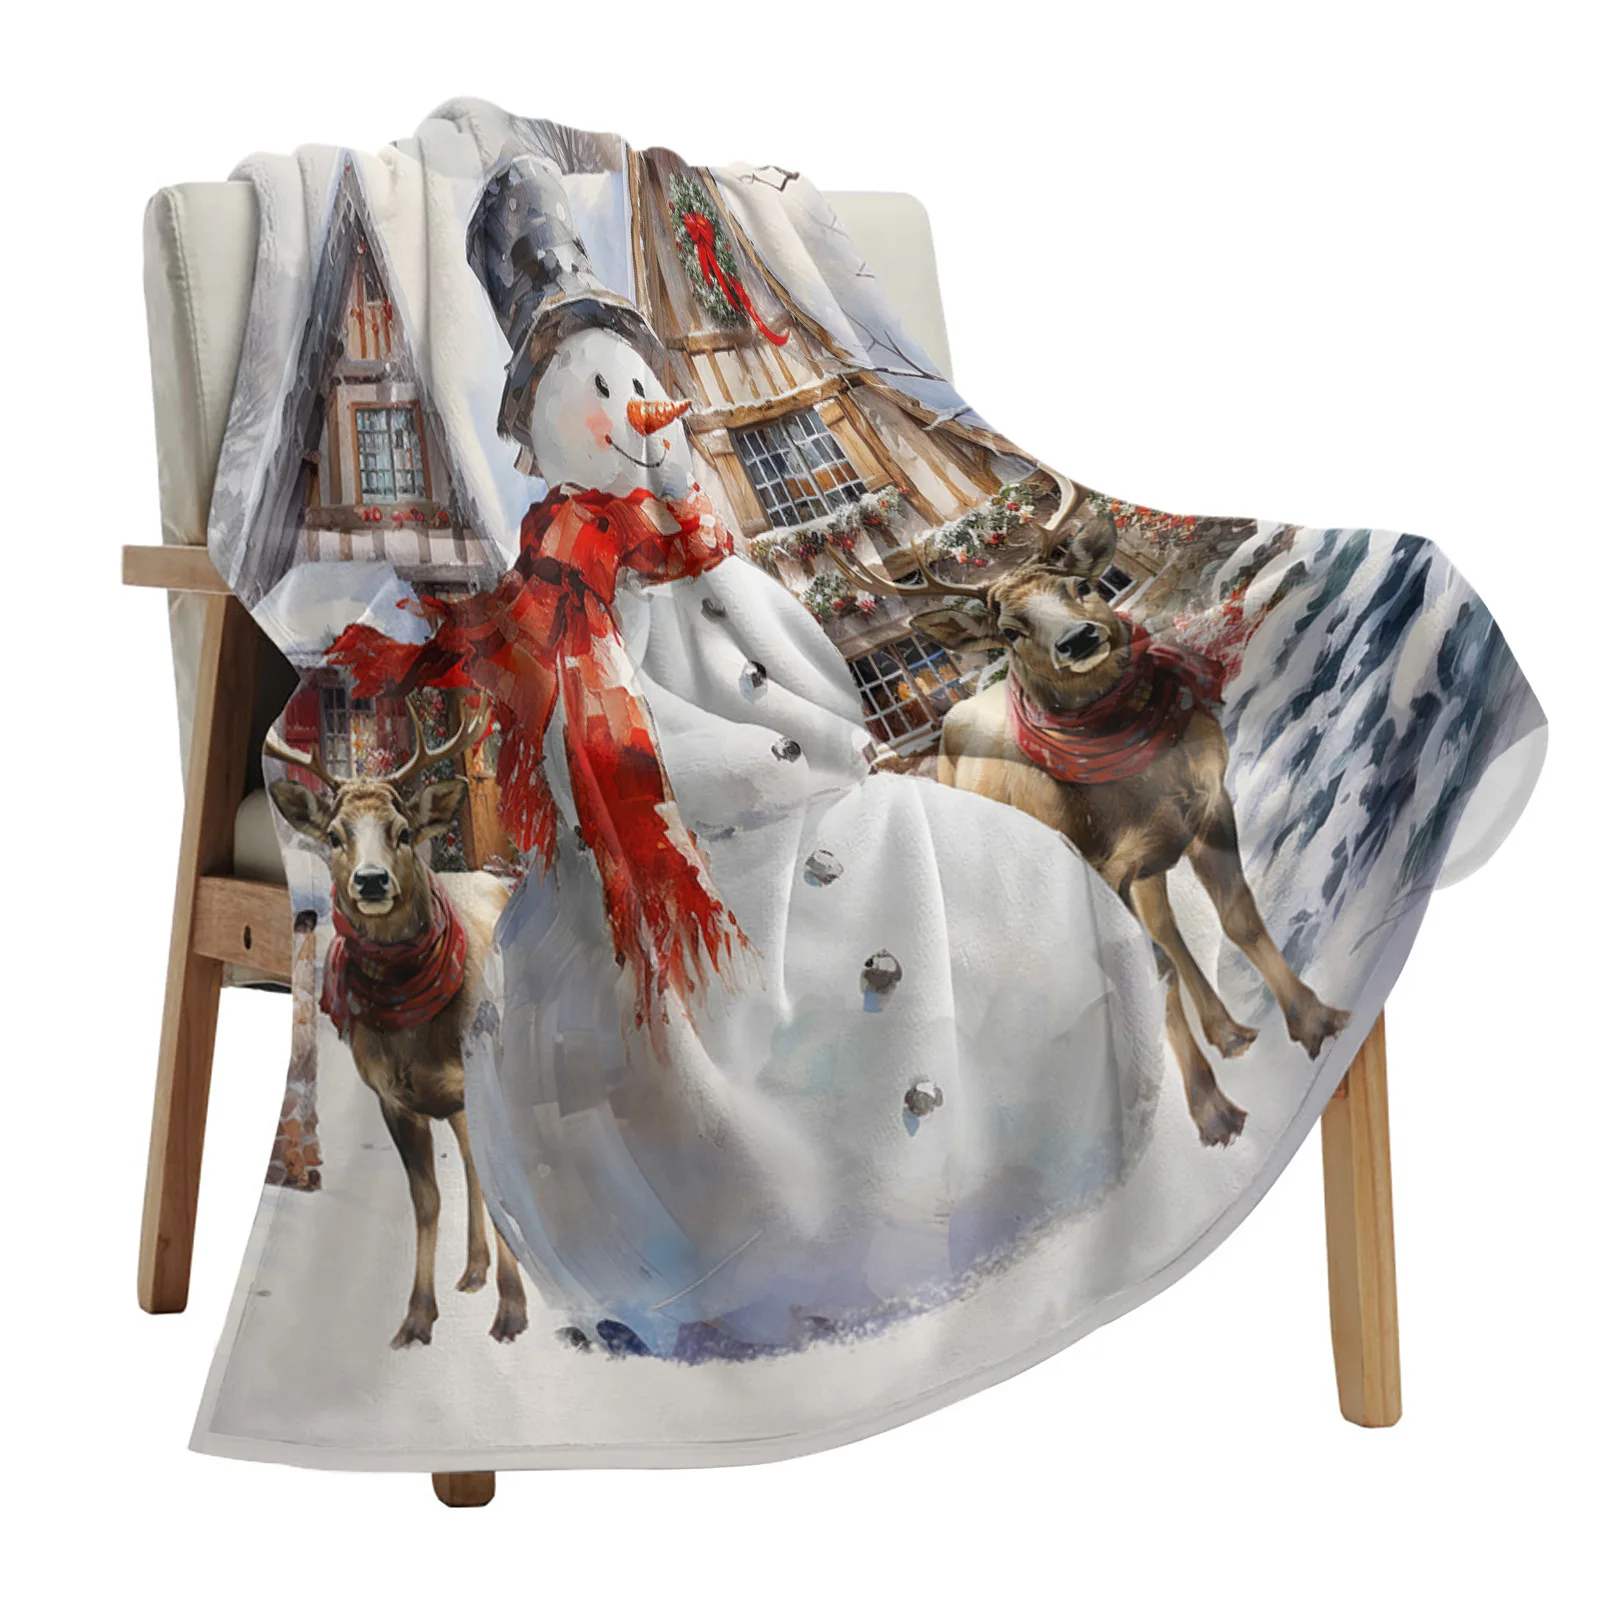 

Рождественское одеяло со снеговиком, оленем, винтажное одеяло на ферму, искусственное одеяло, мягкое плюшевое теплое диванное одеяло, праздничные подарки